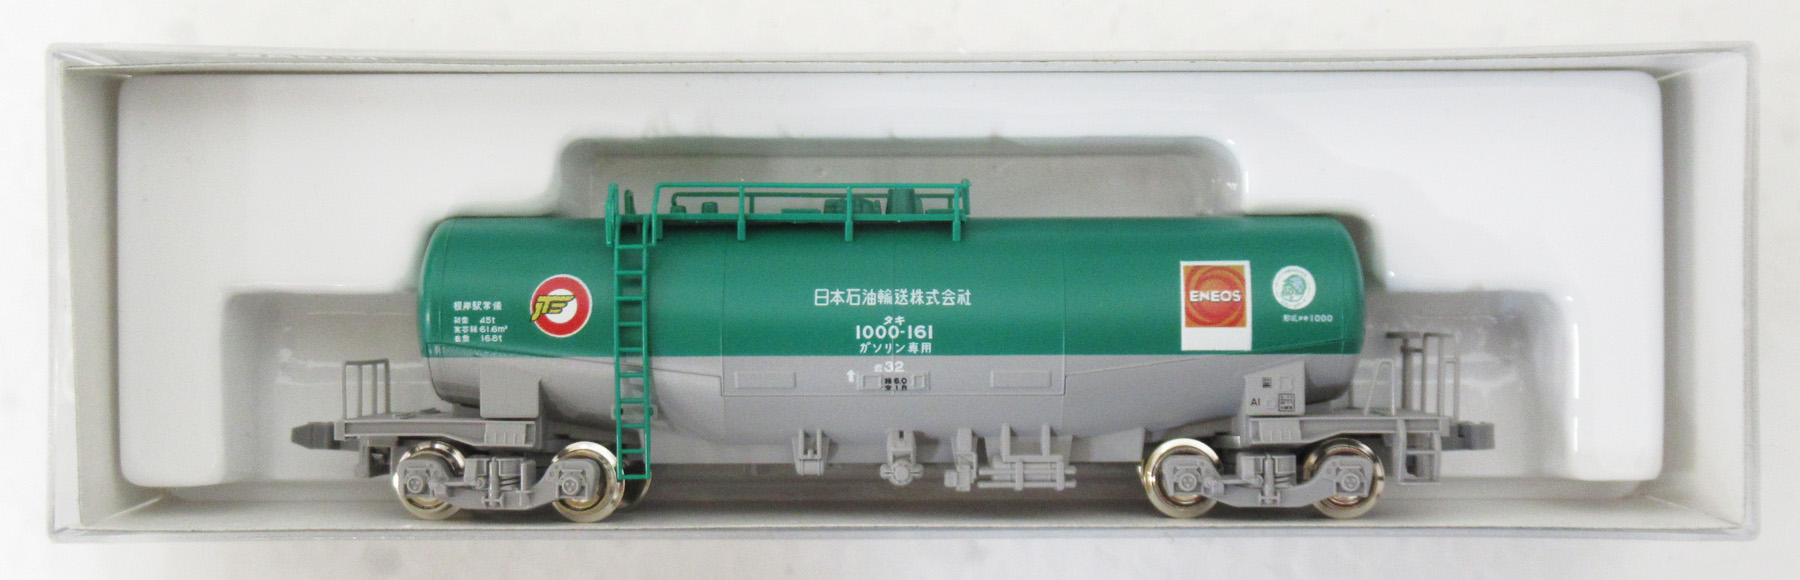 KATO 10-825 タキ1000 日本石油輸送色 ENEOS エコレールマーク付 8両 